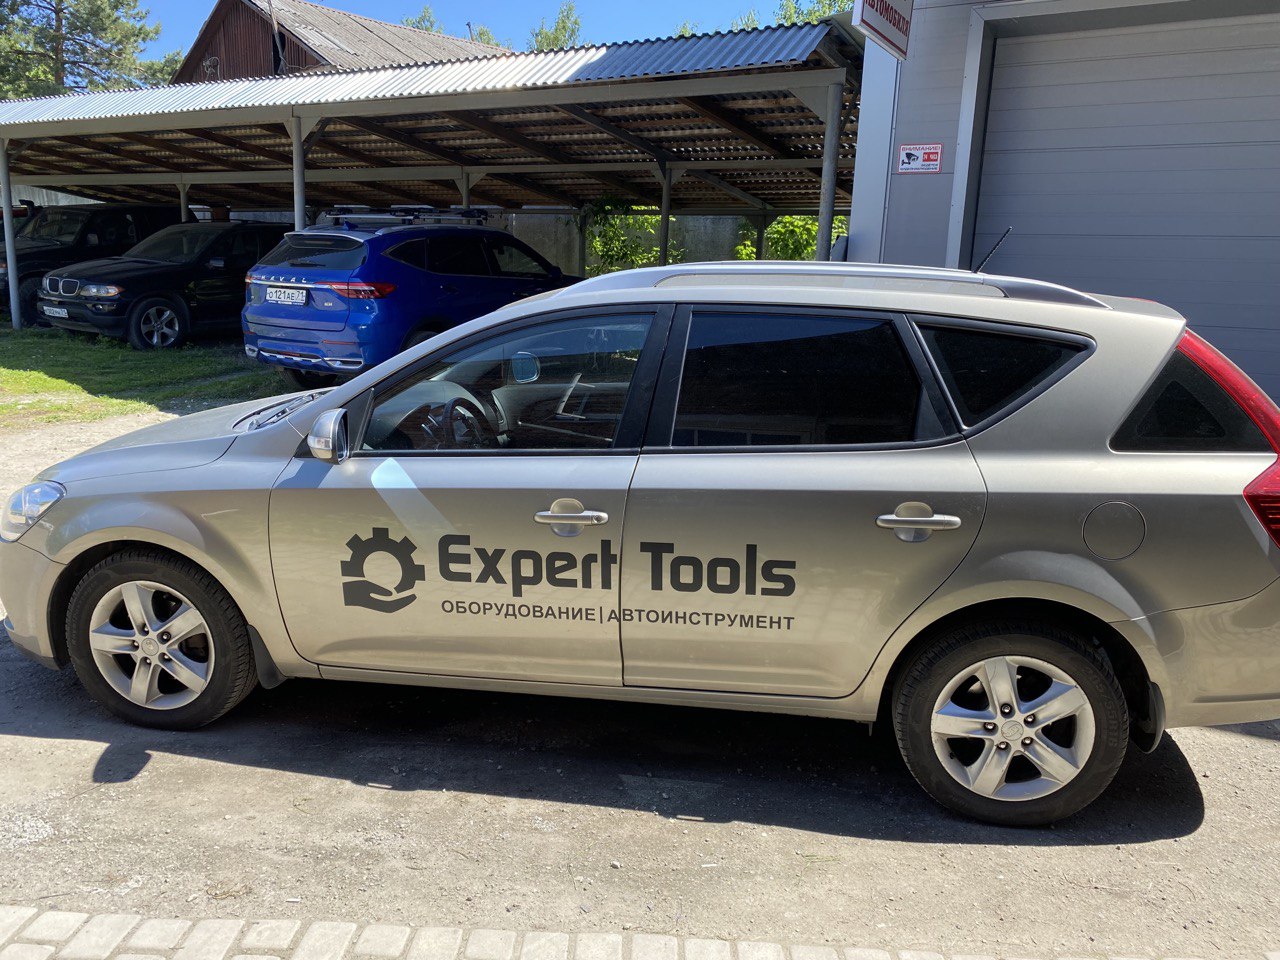 Брендирование автомобиля для Expert Tools